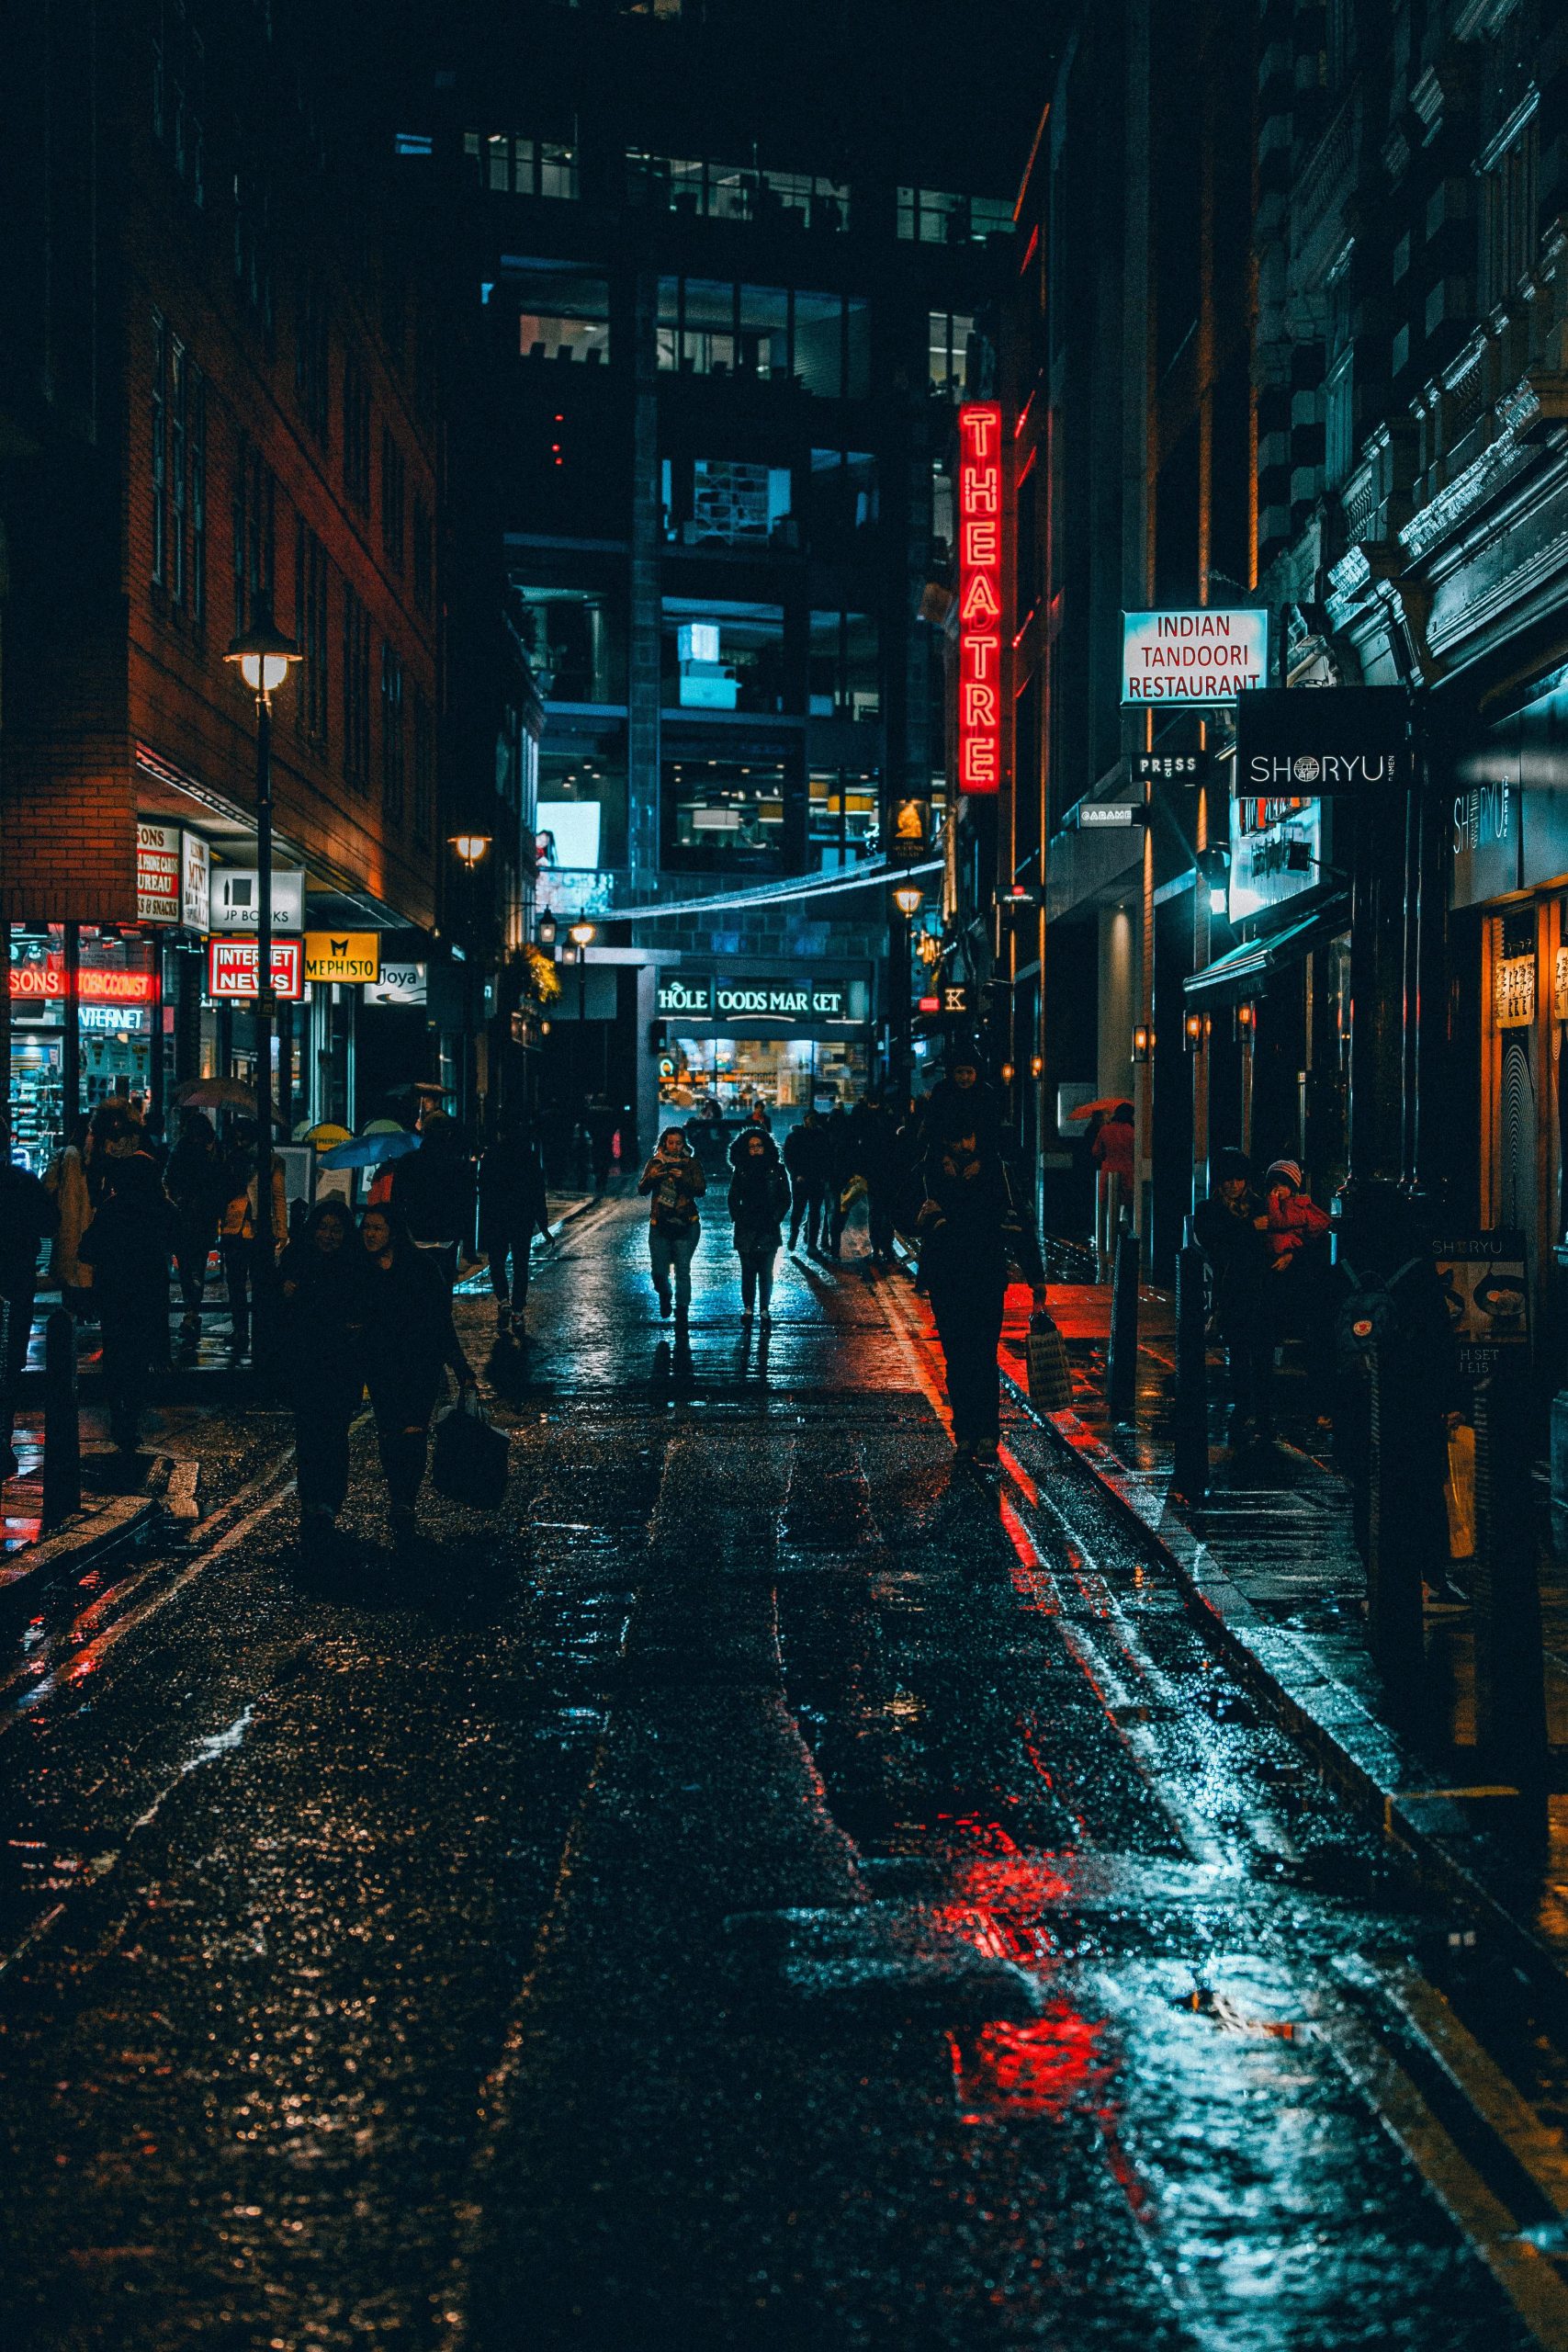 Hãy thưởng thức cảm giác huyền bí và lãng mạn của đường phố về đêm trong hình ảnh đầy màu sắc và lung linh này!